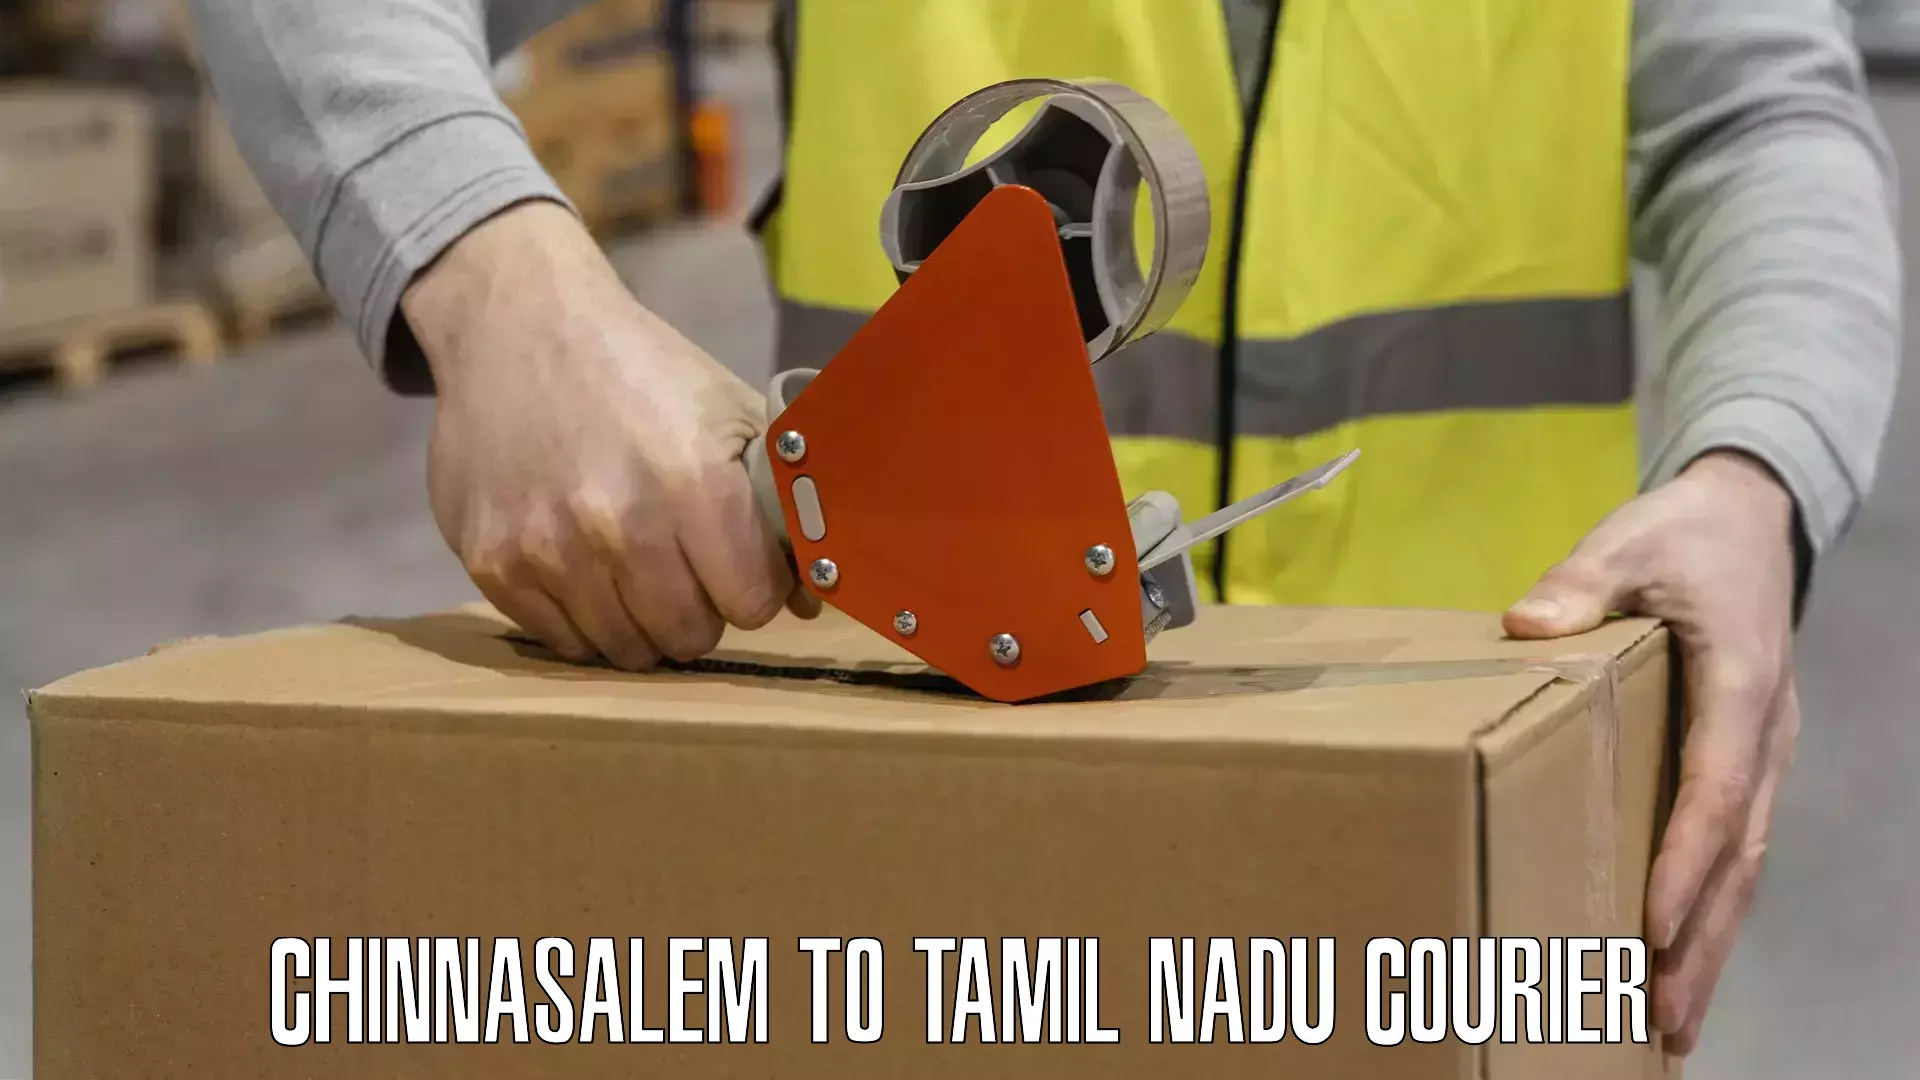 Quick booking process Chinnasalem to Tamil Nadu